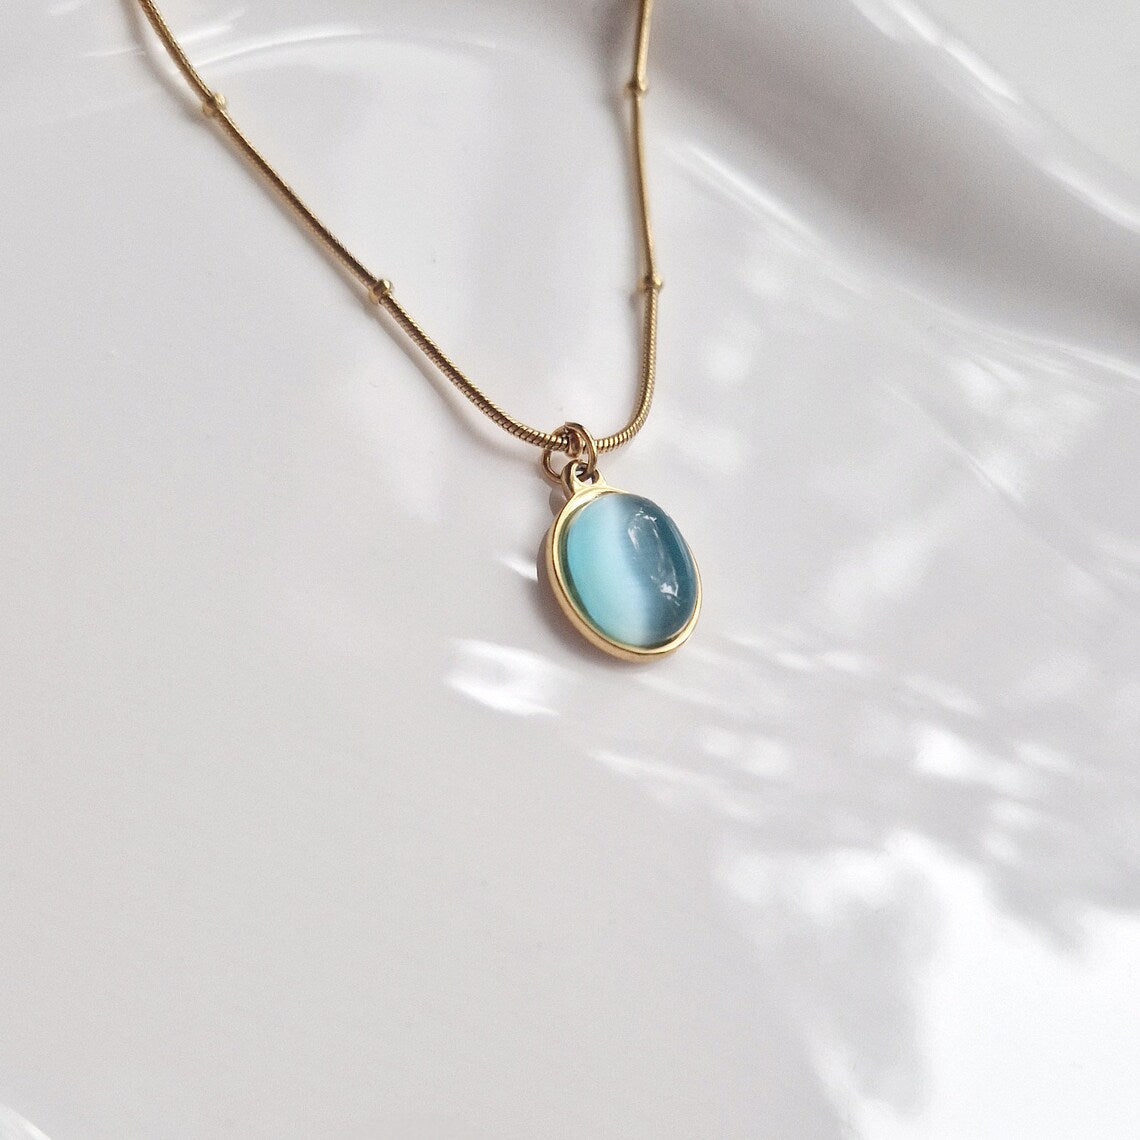 close up of aquamarine pendant necklace